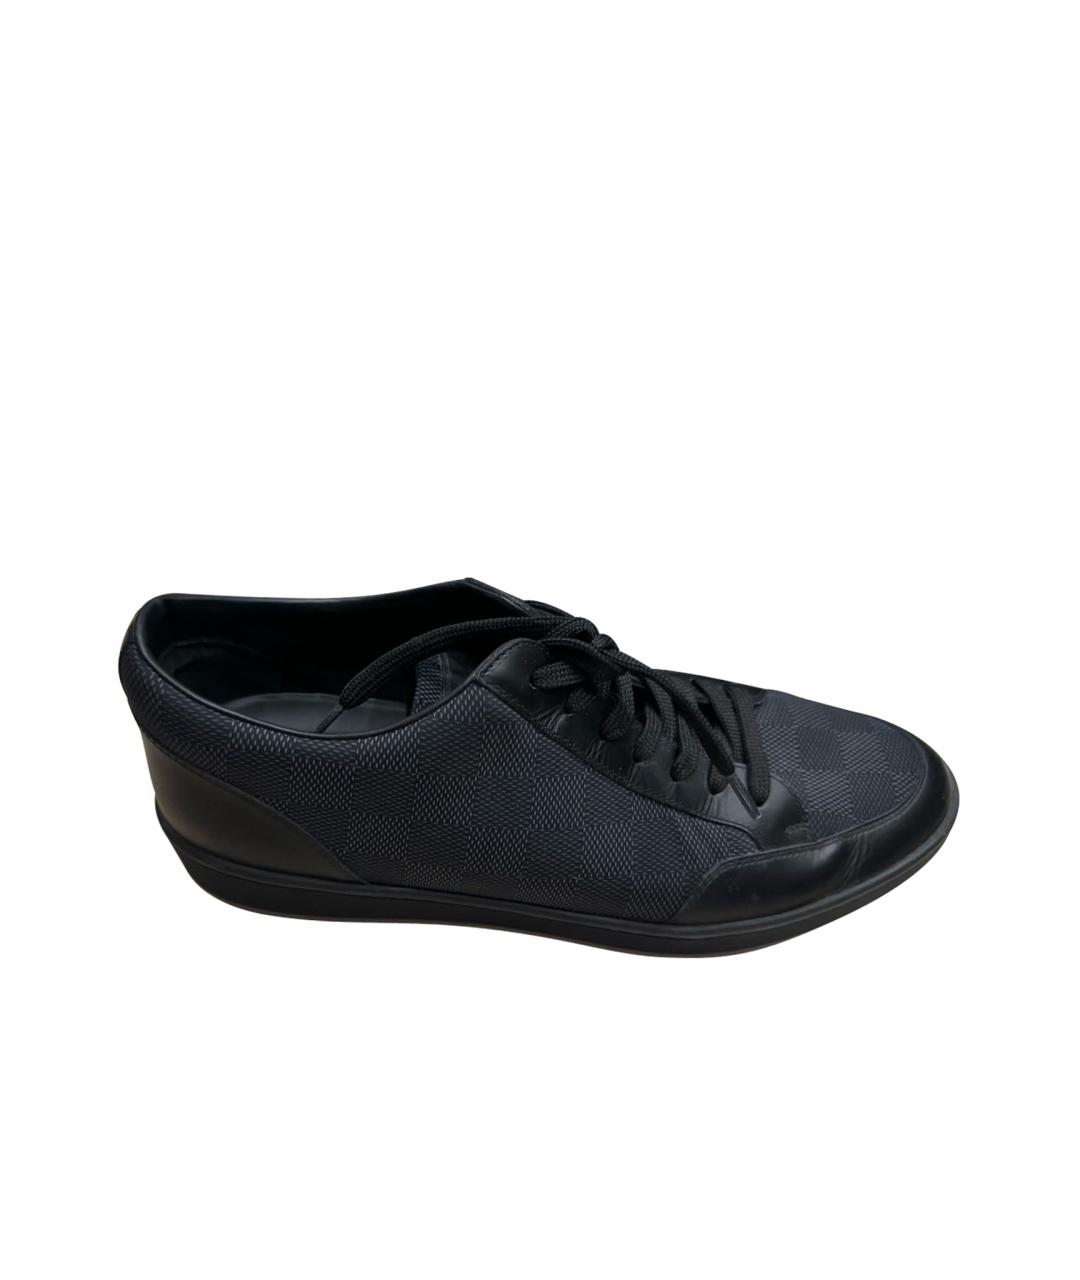 LOUIS VUITTON PRE-OWNED Черные низкие кроссовки / кеды, фото 1